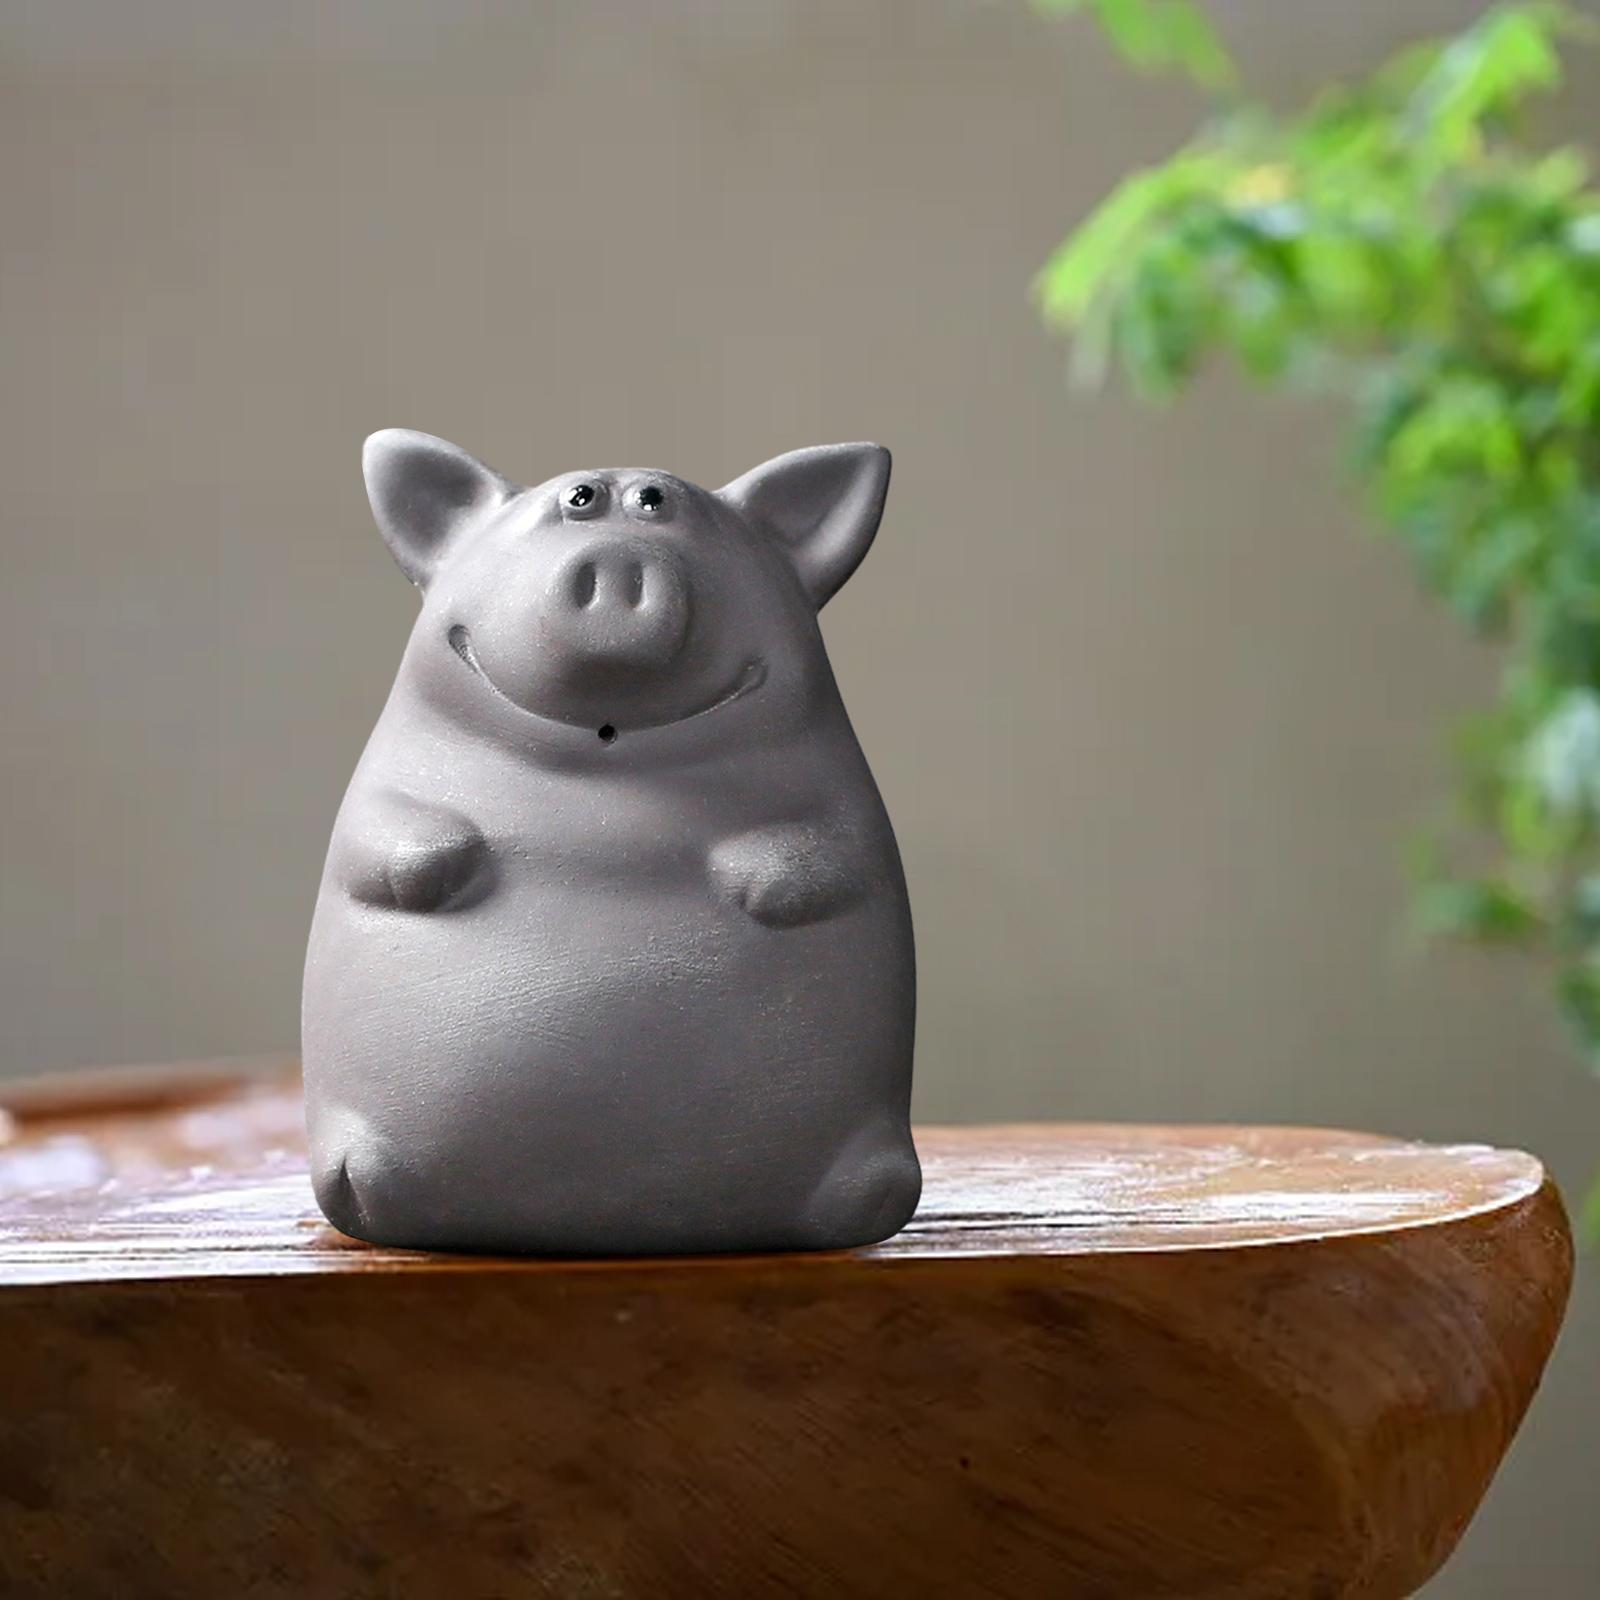 Ceramic Clay Pig Mini Tea Pet Figurine DIY Terrarium Crafts Black